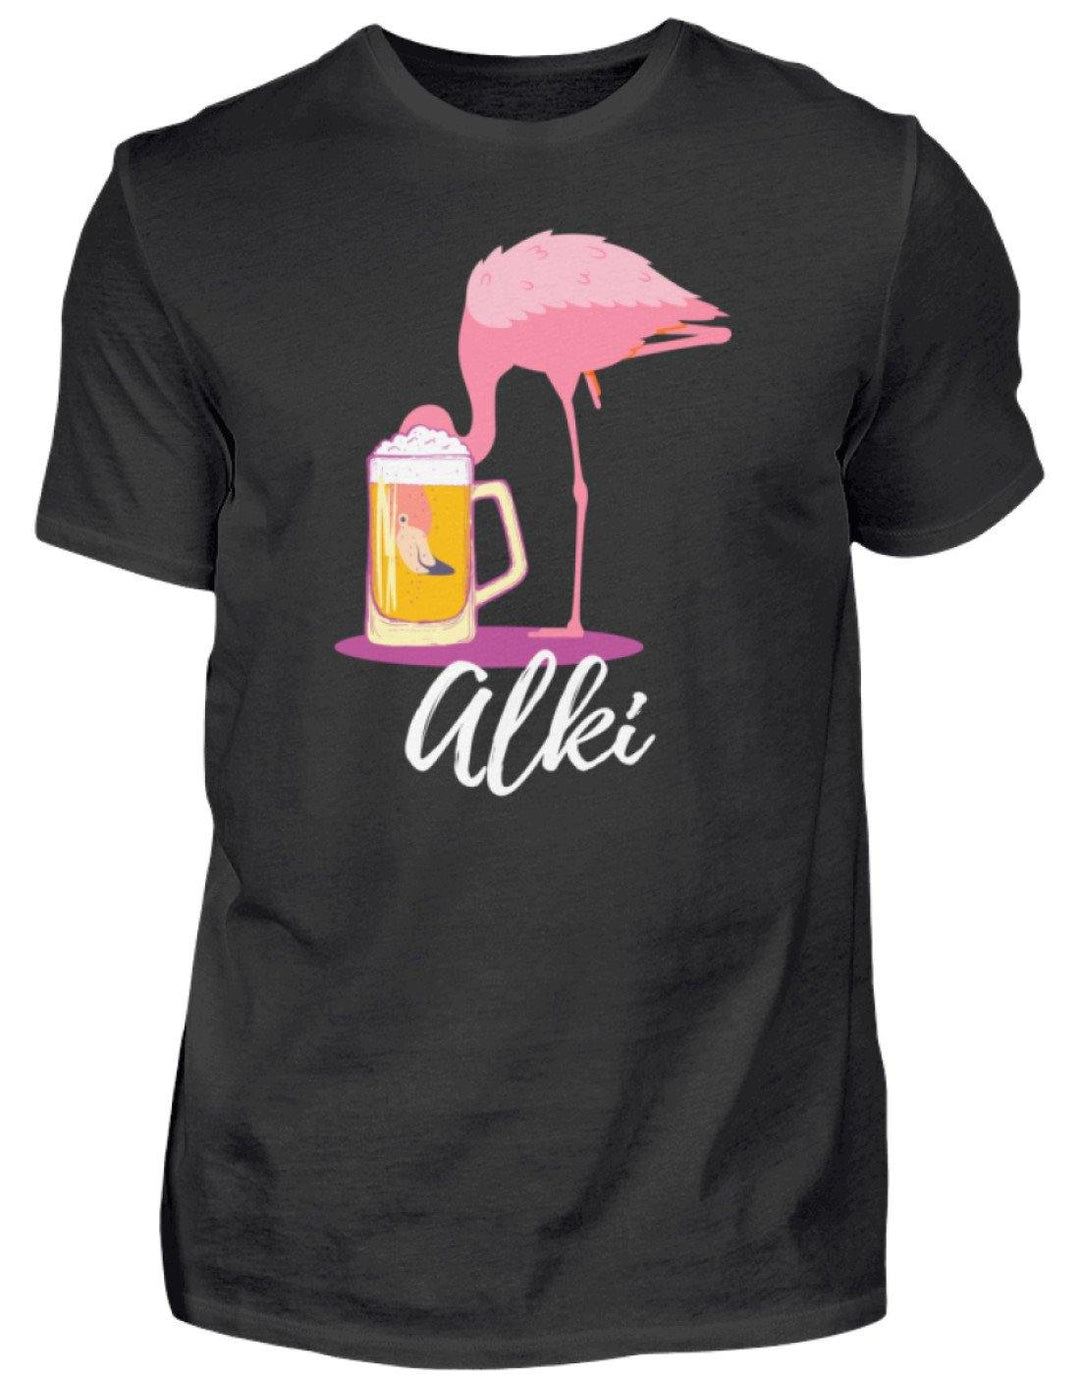 Flamingo Alki - Words on Shirt  - Herren Shirt - Words on Shirts Sag es mit dem Mittelfinger Shirts Hoodies Sweatshirt Taschen Gymsack Spruch Sprüche Statement